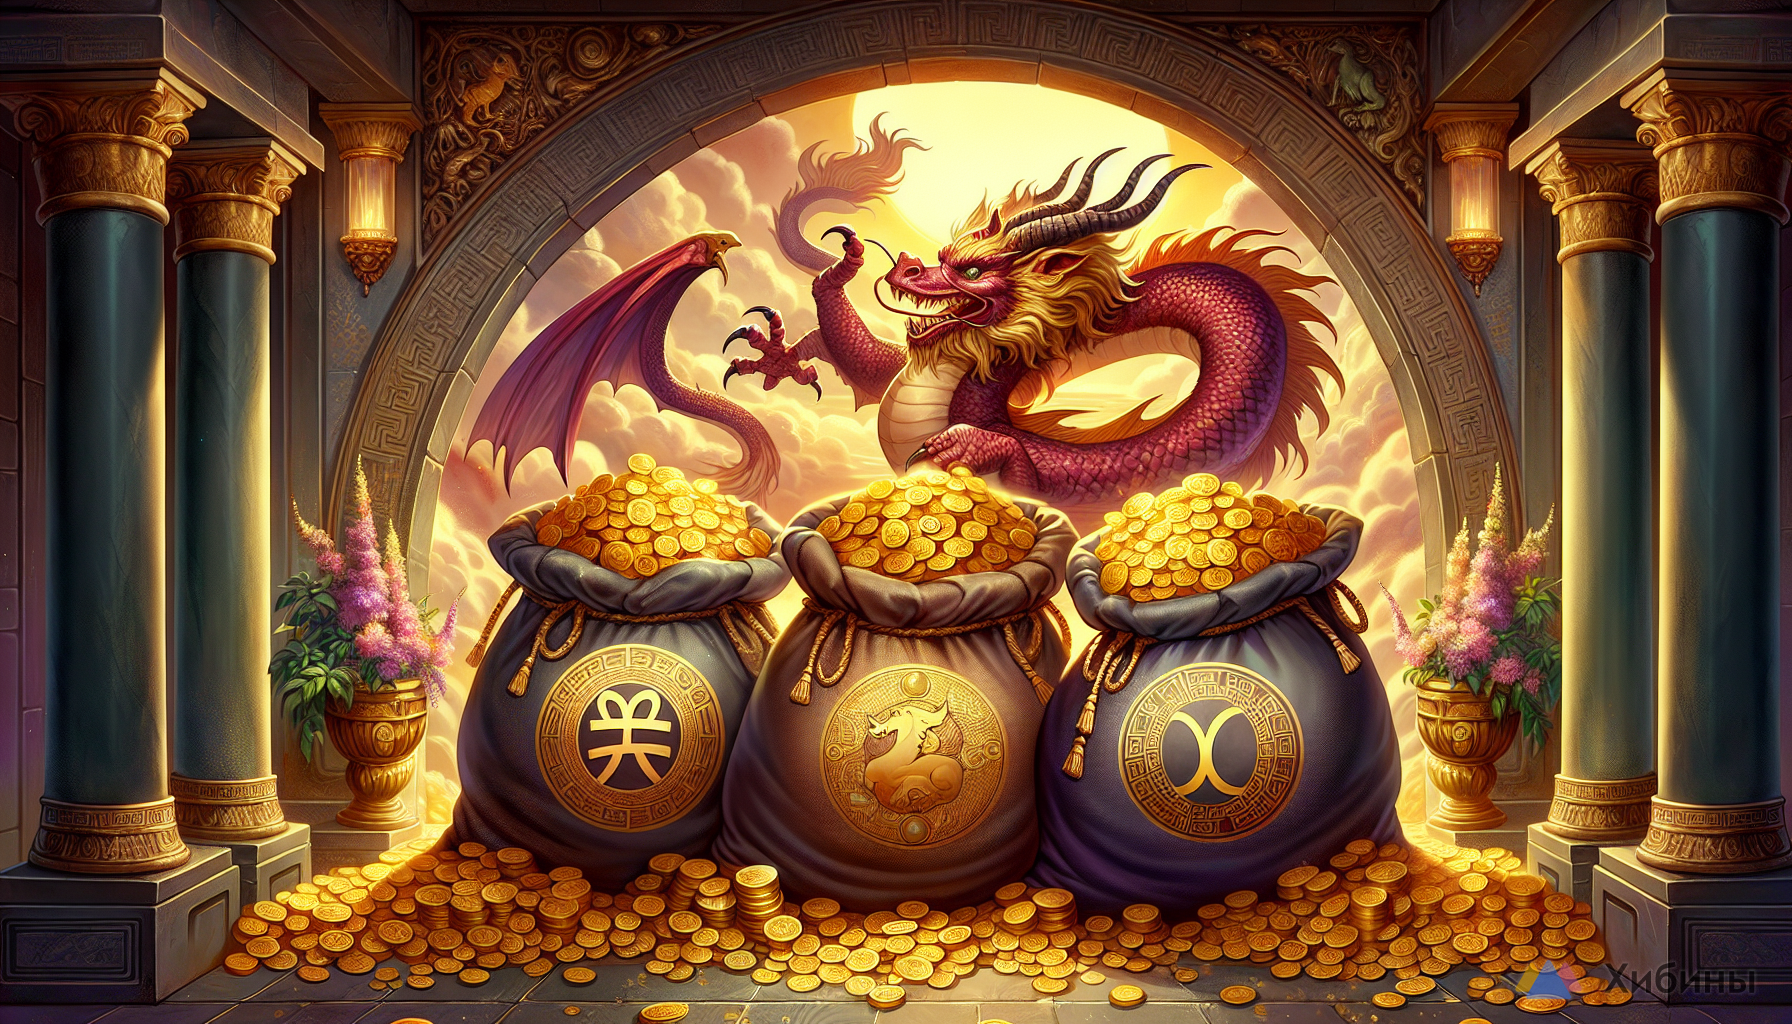 Попадут в золотое хранилище Дракона: Деньги будут выносить мешками в мае — Судьба избрала 3 знака Зодиака